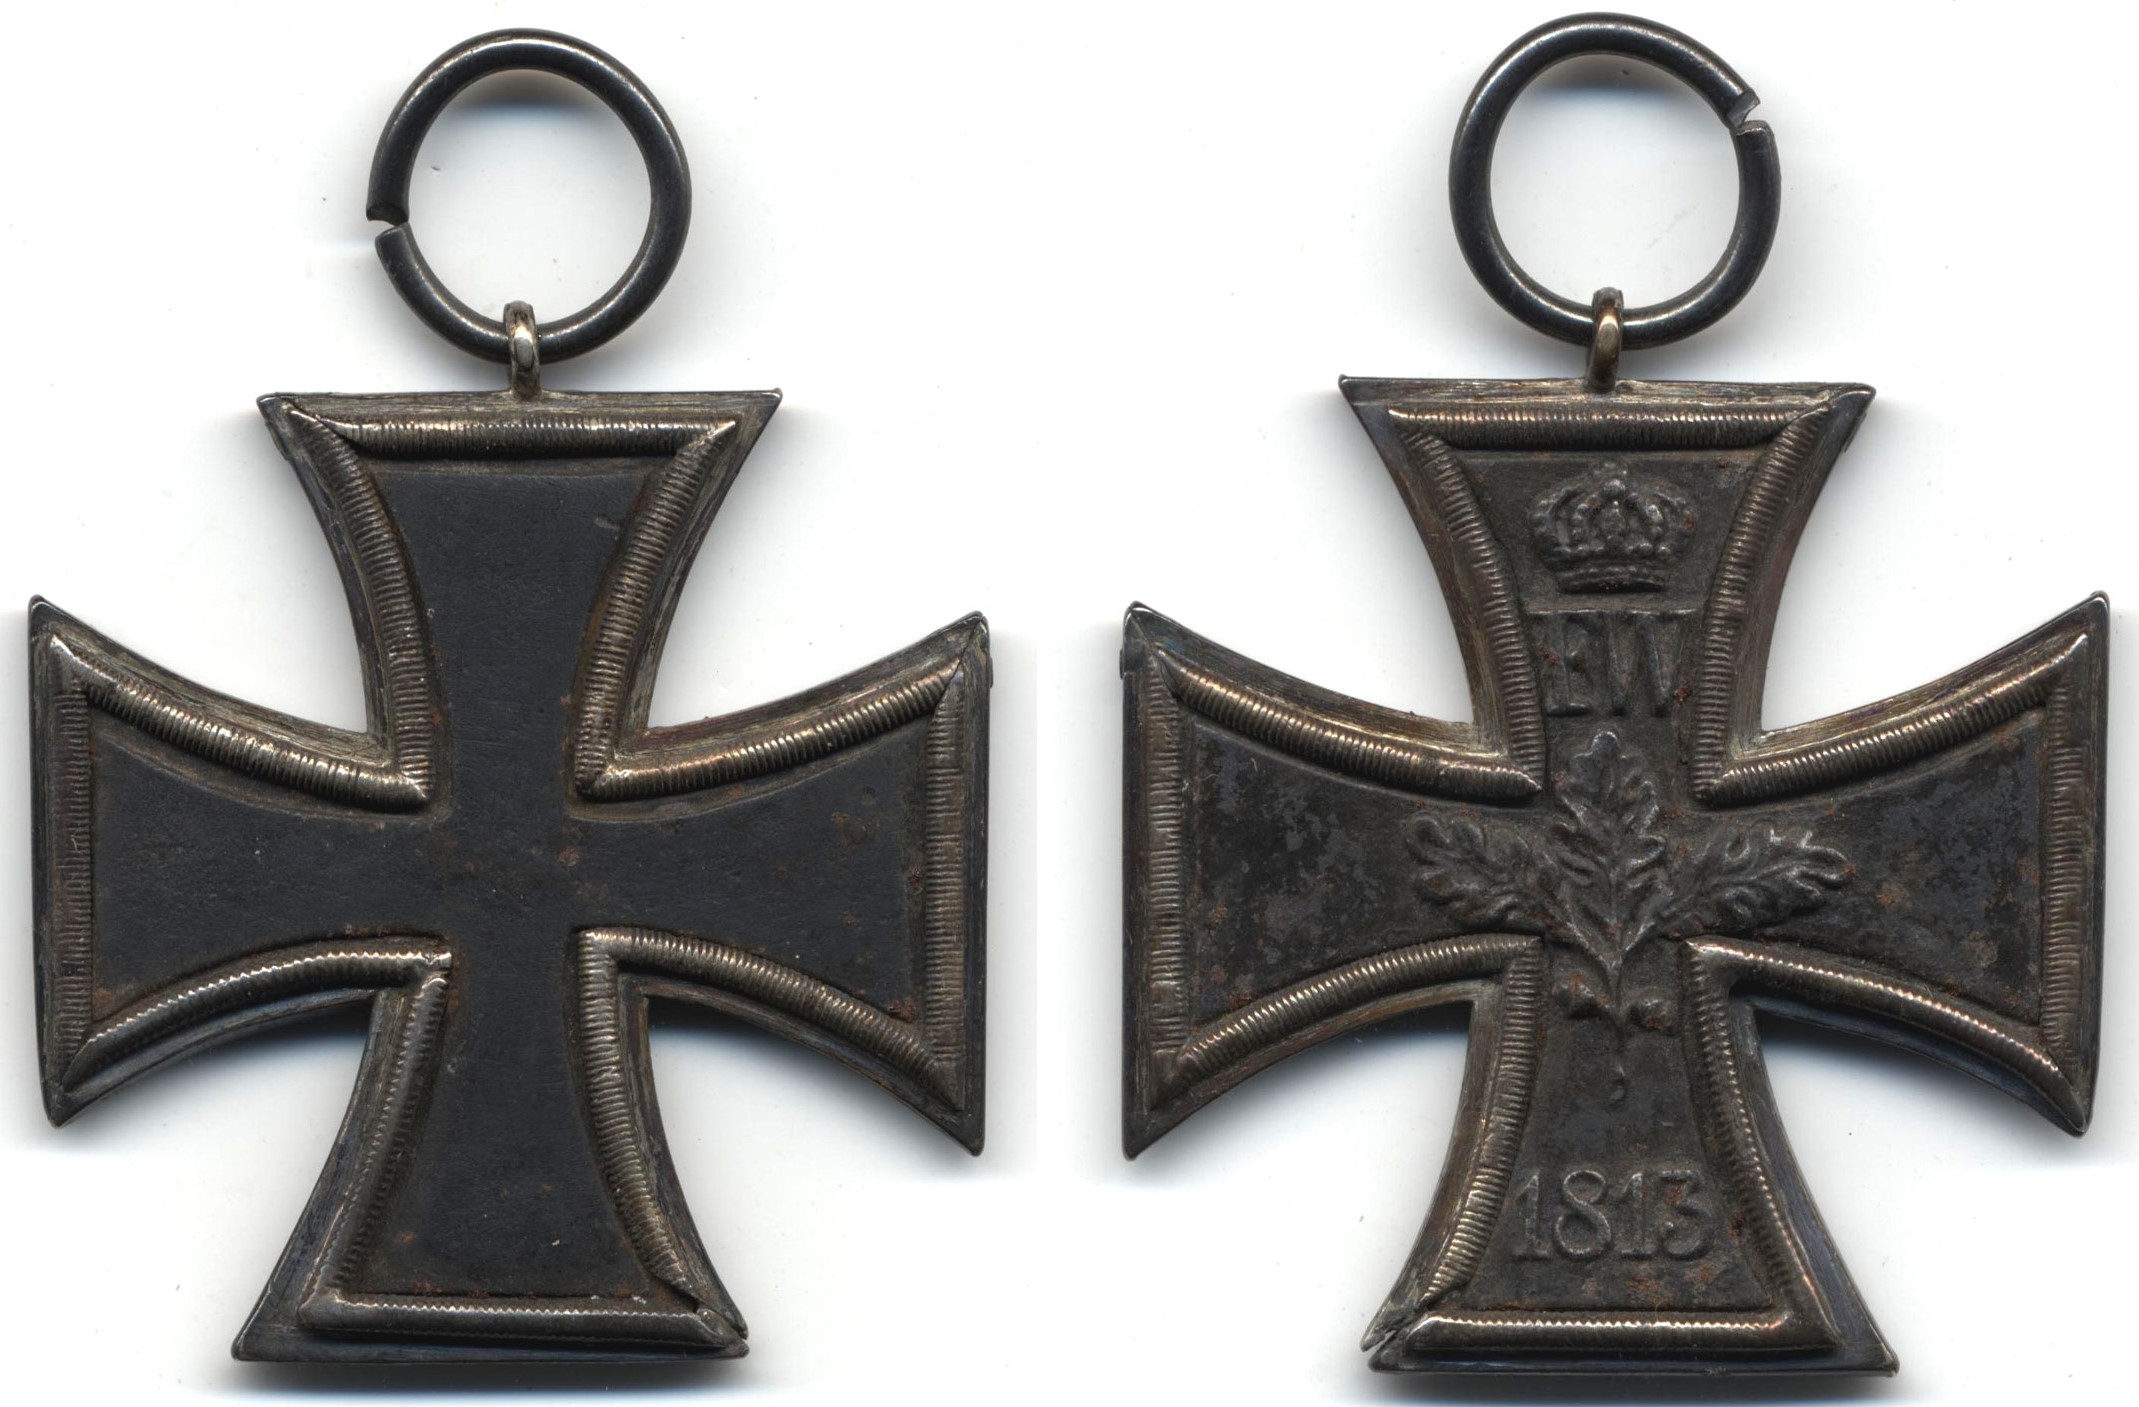 Чугунный крест. Железный крест 1813. Прусский Железный крест 1813. Железный крест образца 1813 года. Железный крест награда 1813.